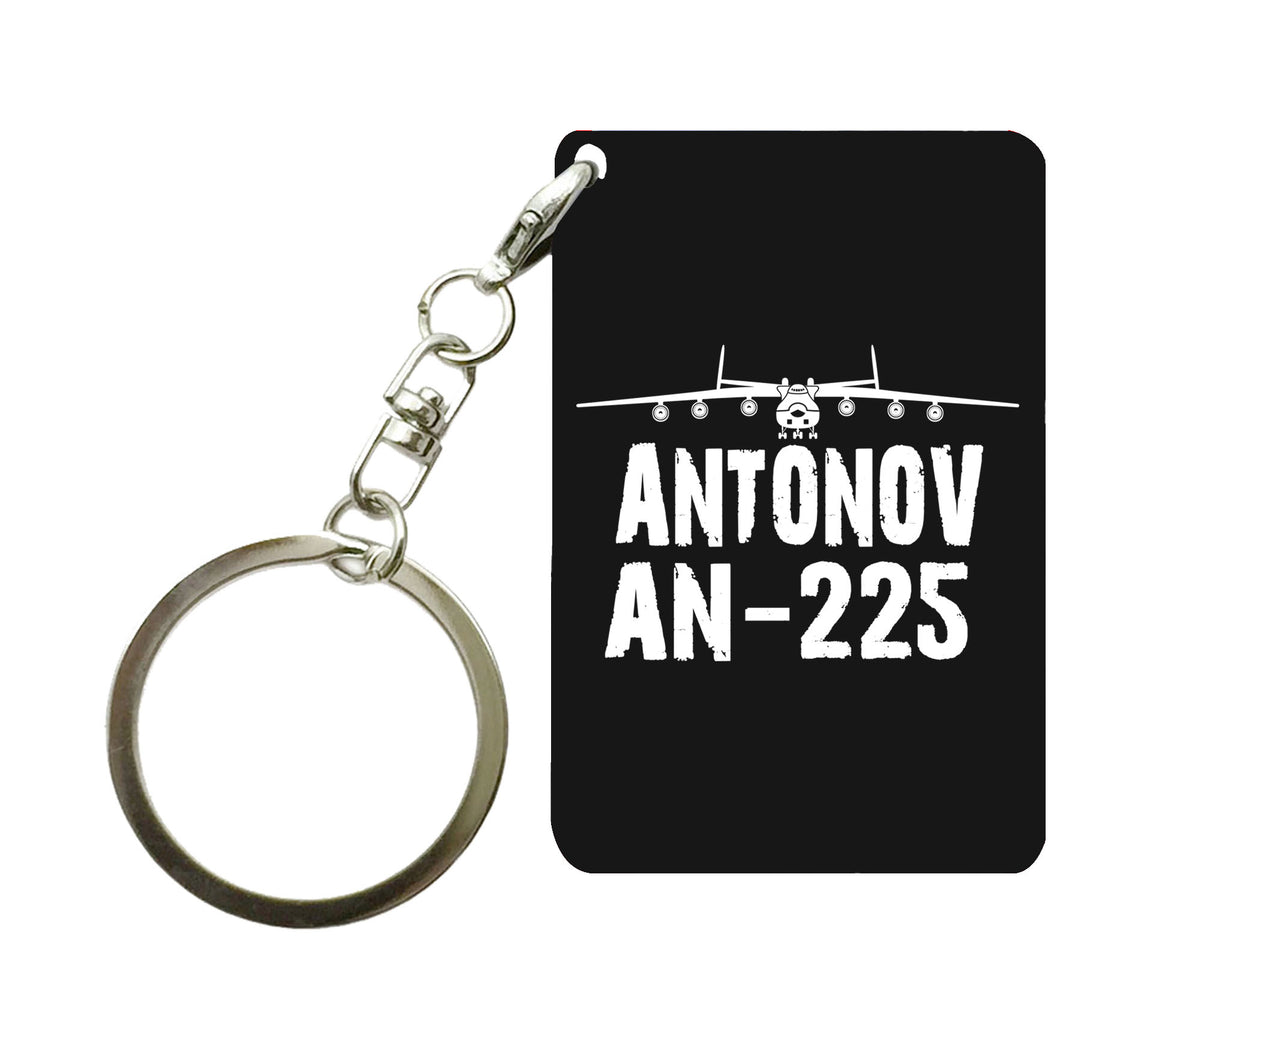 Antonov AN-225 & Plane Designed Key Chains